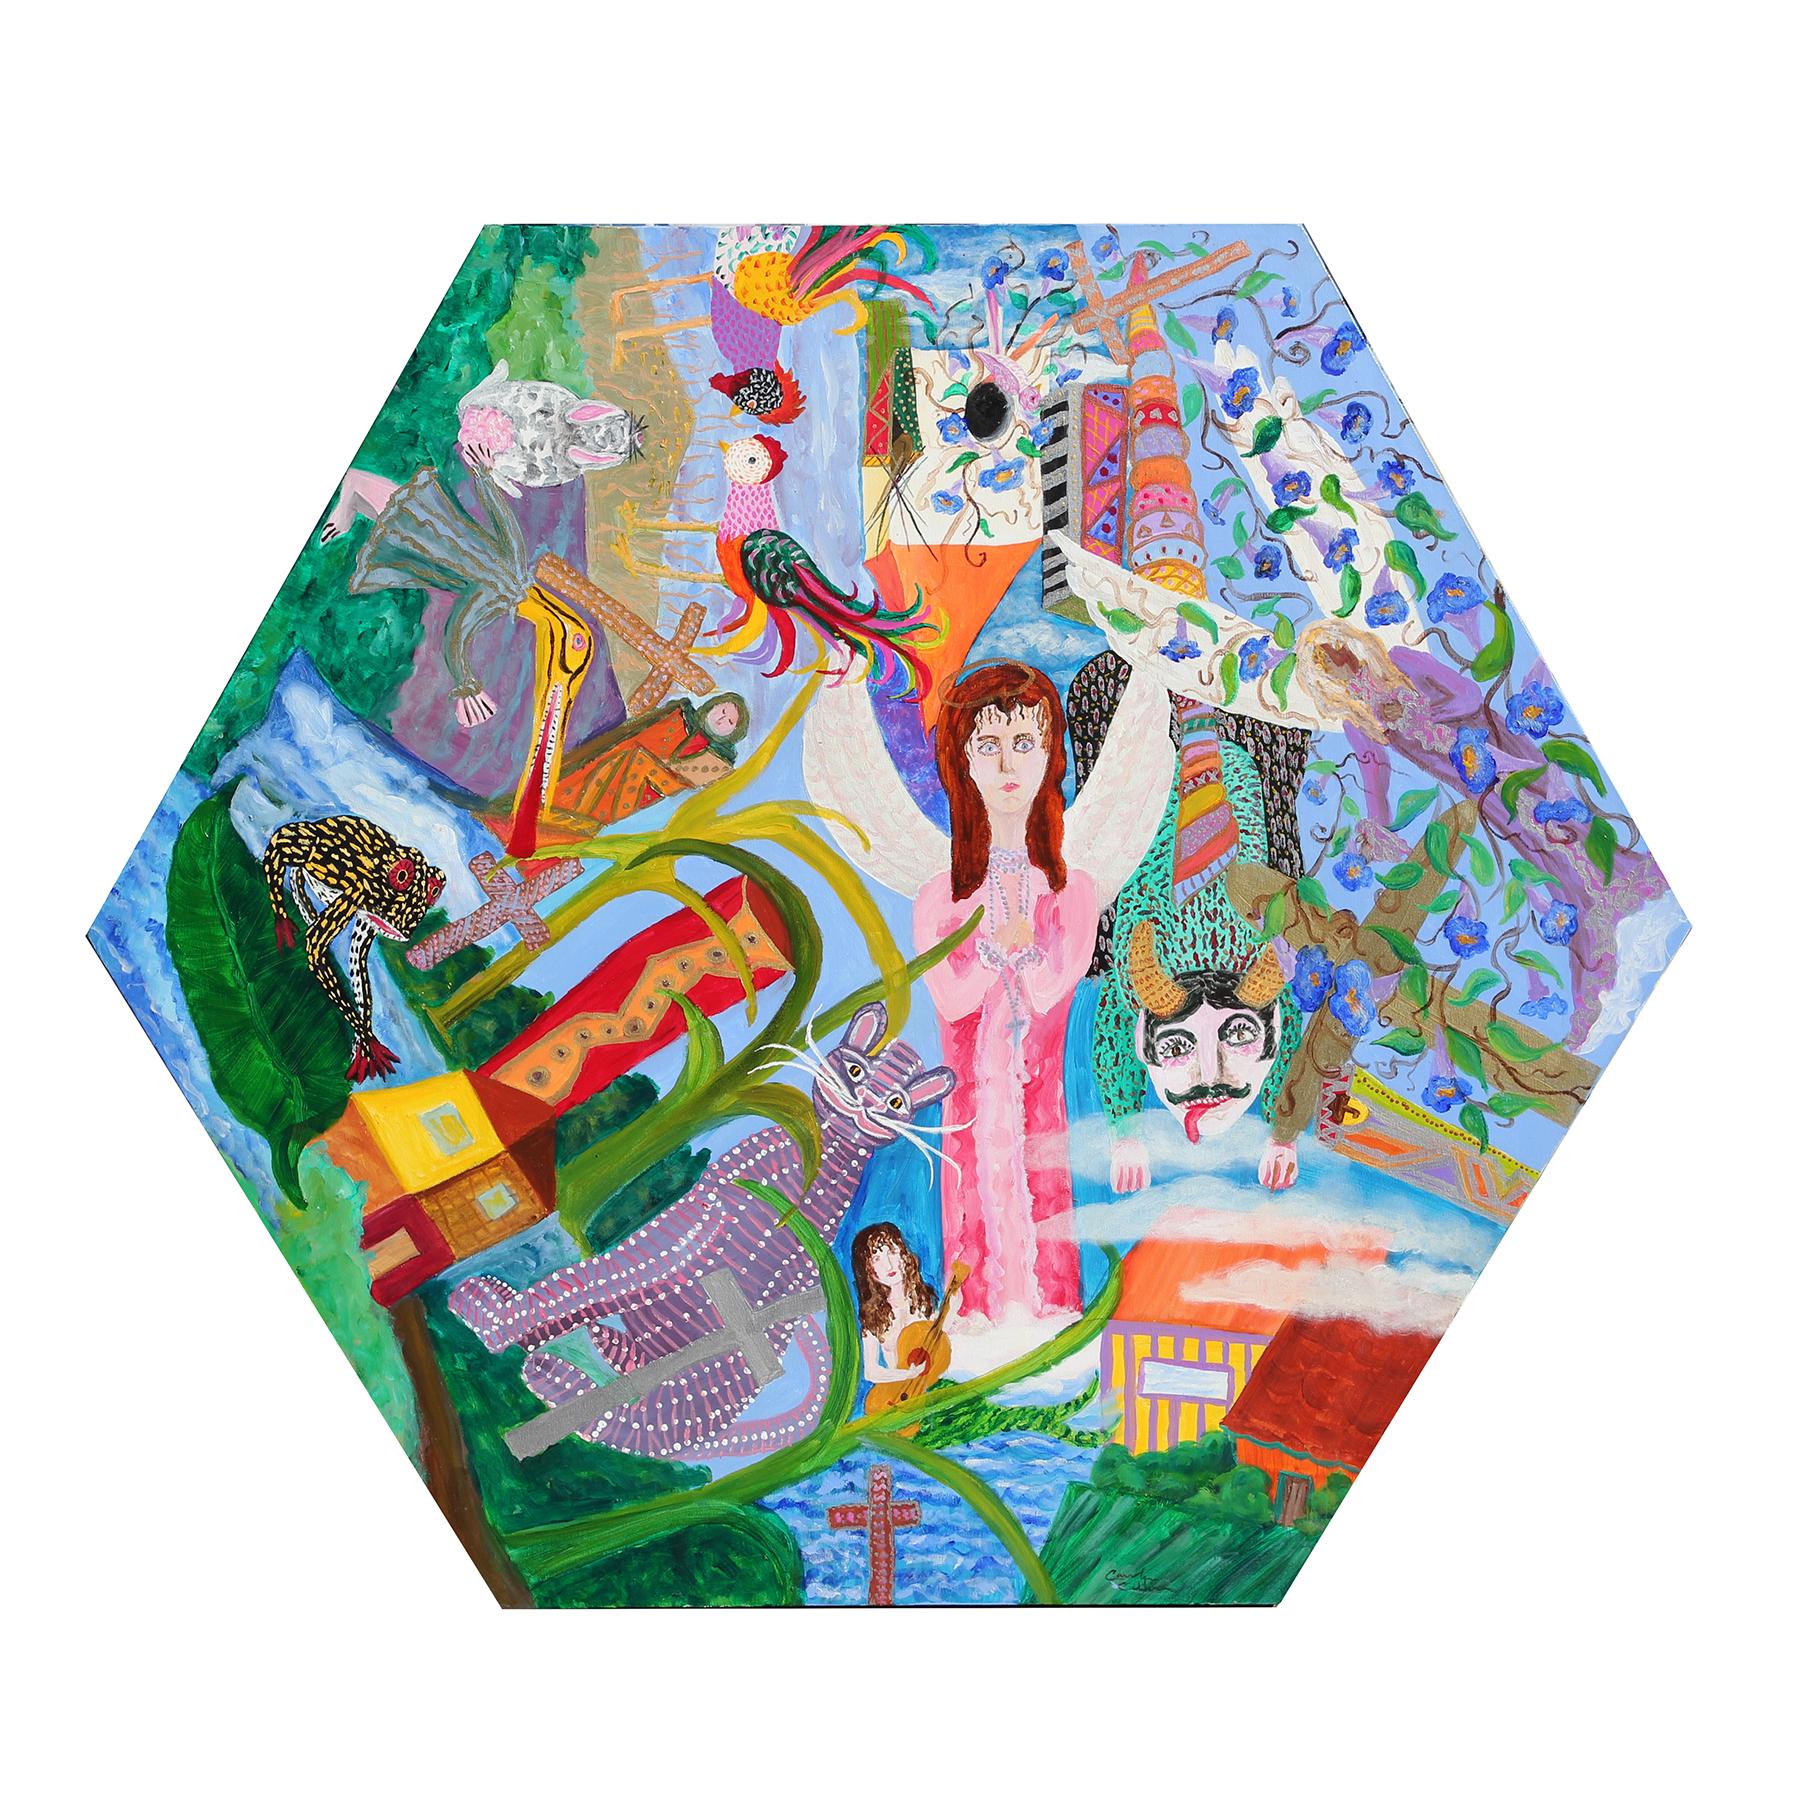 Figurative Painting Carolyn Oliver - Peinture sur toile hexagonale figurative abstraite colorée « célébration de la vie » 